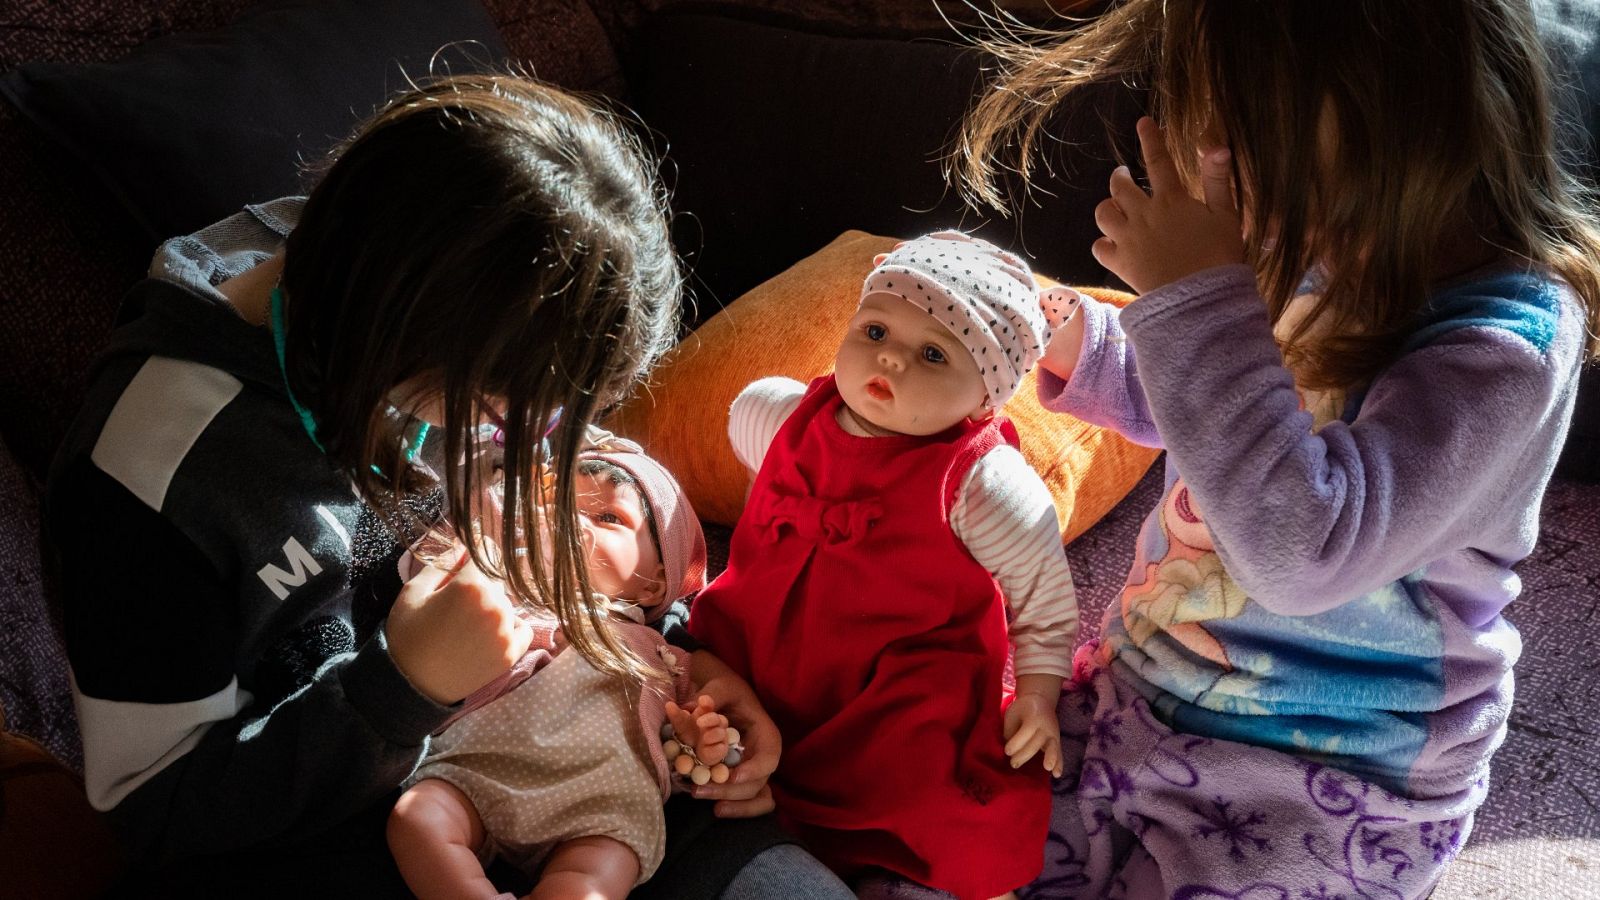 Dos niñas juegan con las muñecas que han recibido de regalo por el Día de Reyes, en Madrid